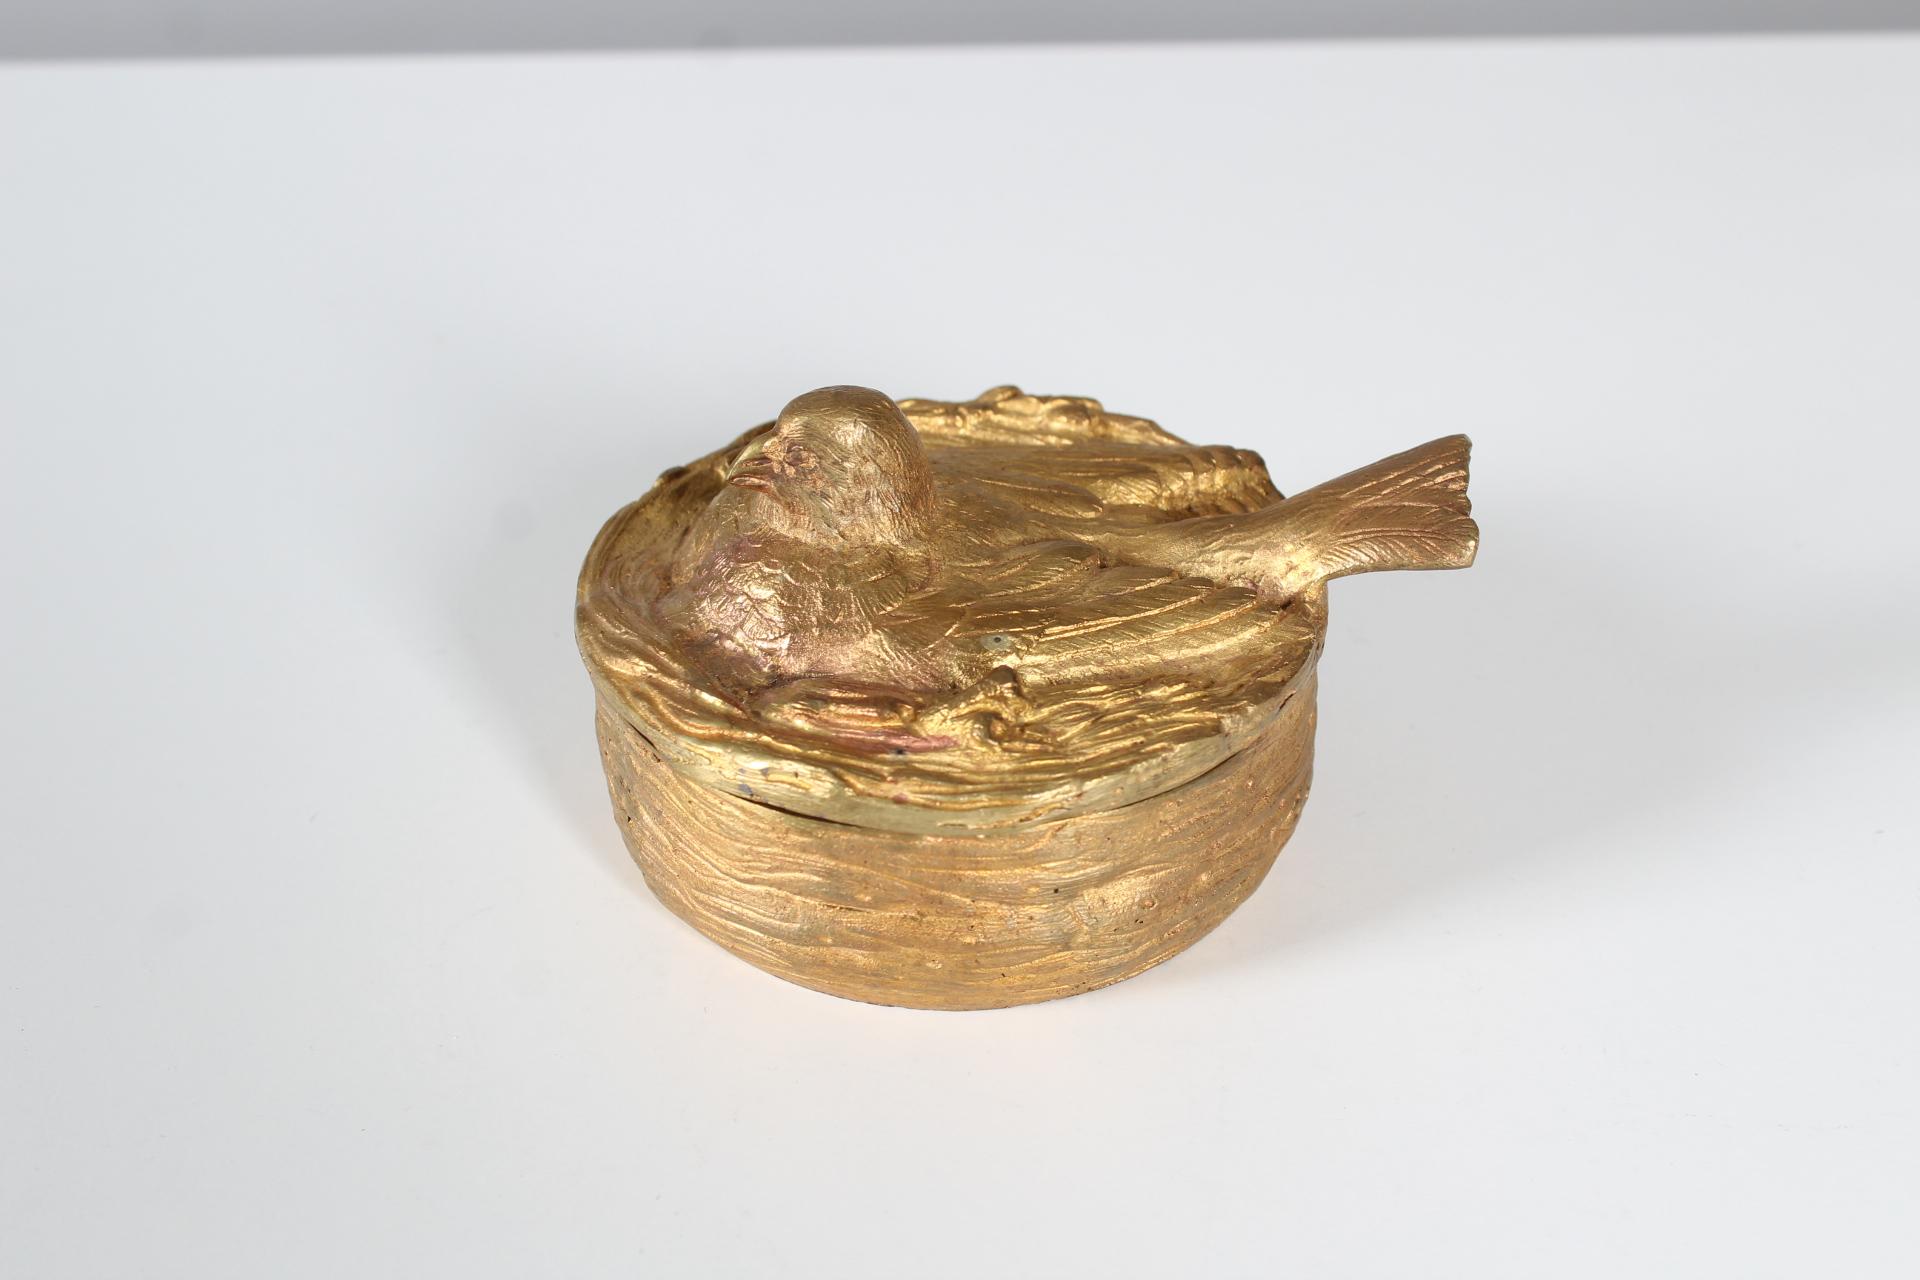 Travail de bronze lourd et de haute qualité, doré.
Représentation d'un oiseau dans un nid.
France, fin du XIXe siècle.
Peut être utilisé à merveille comme boîte à bijoux.

.